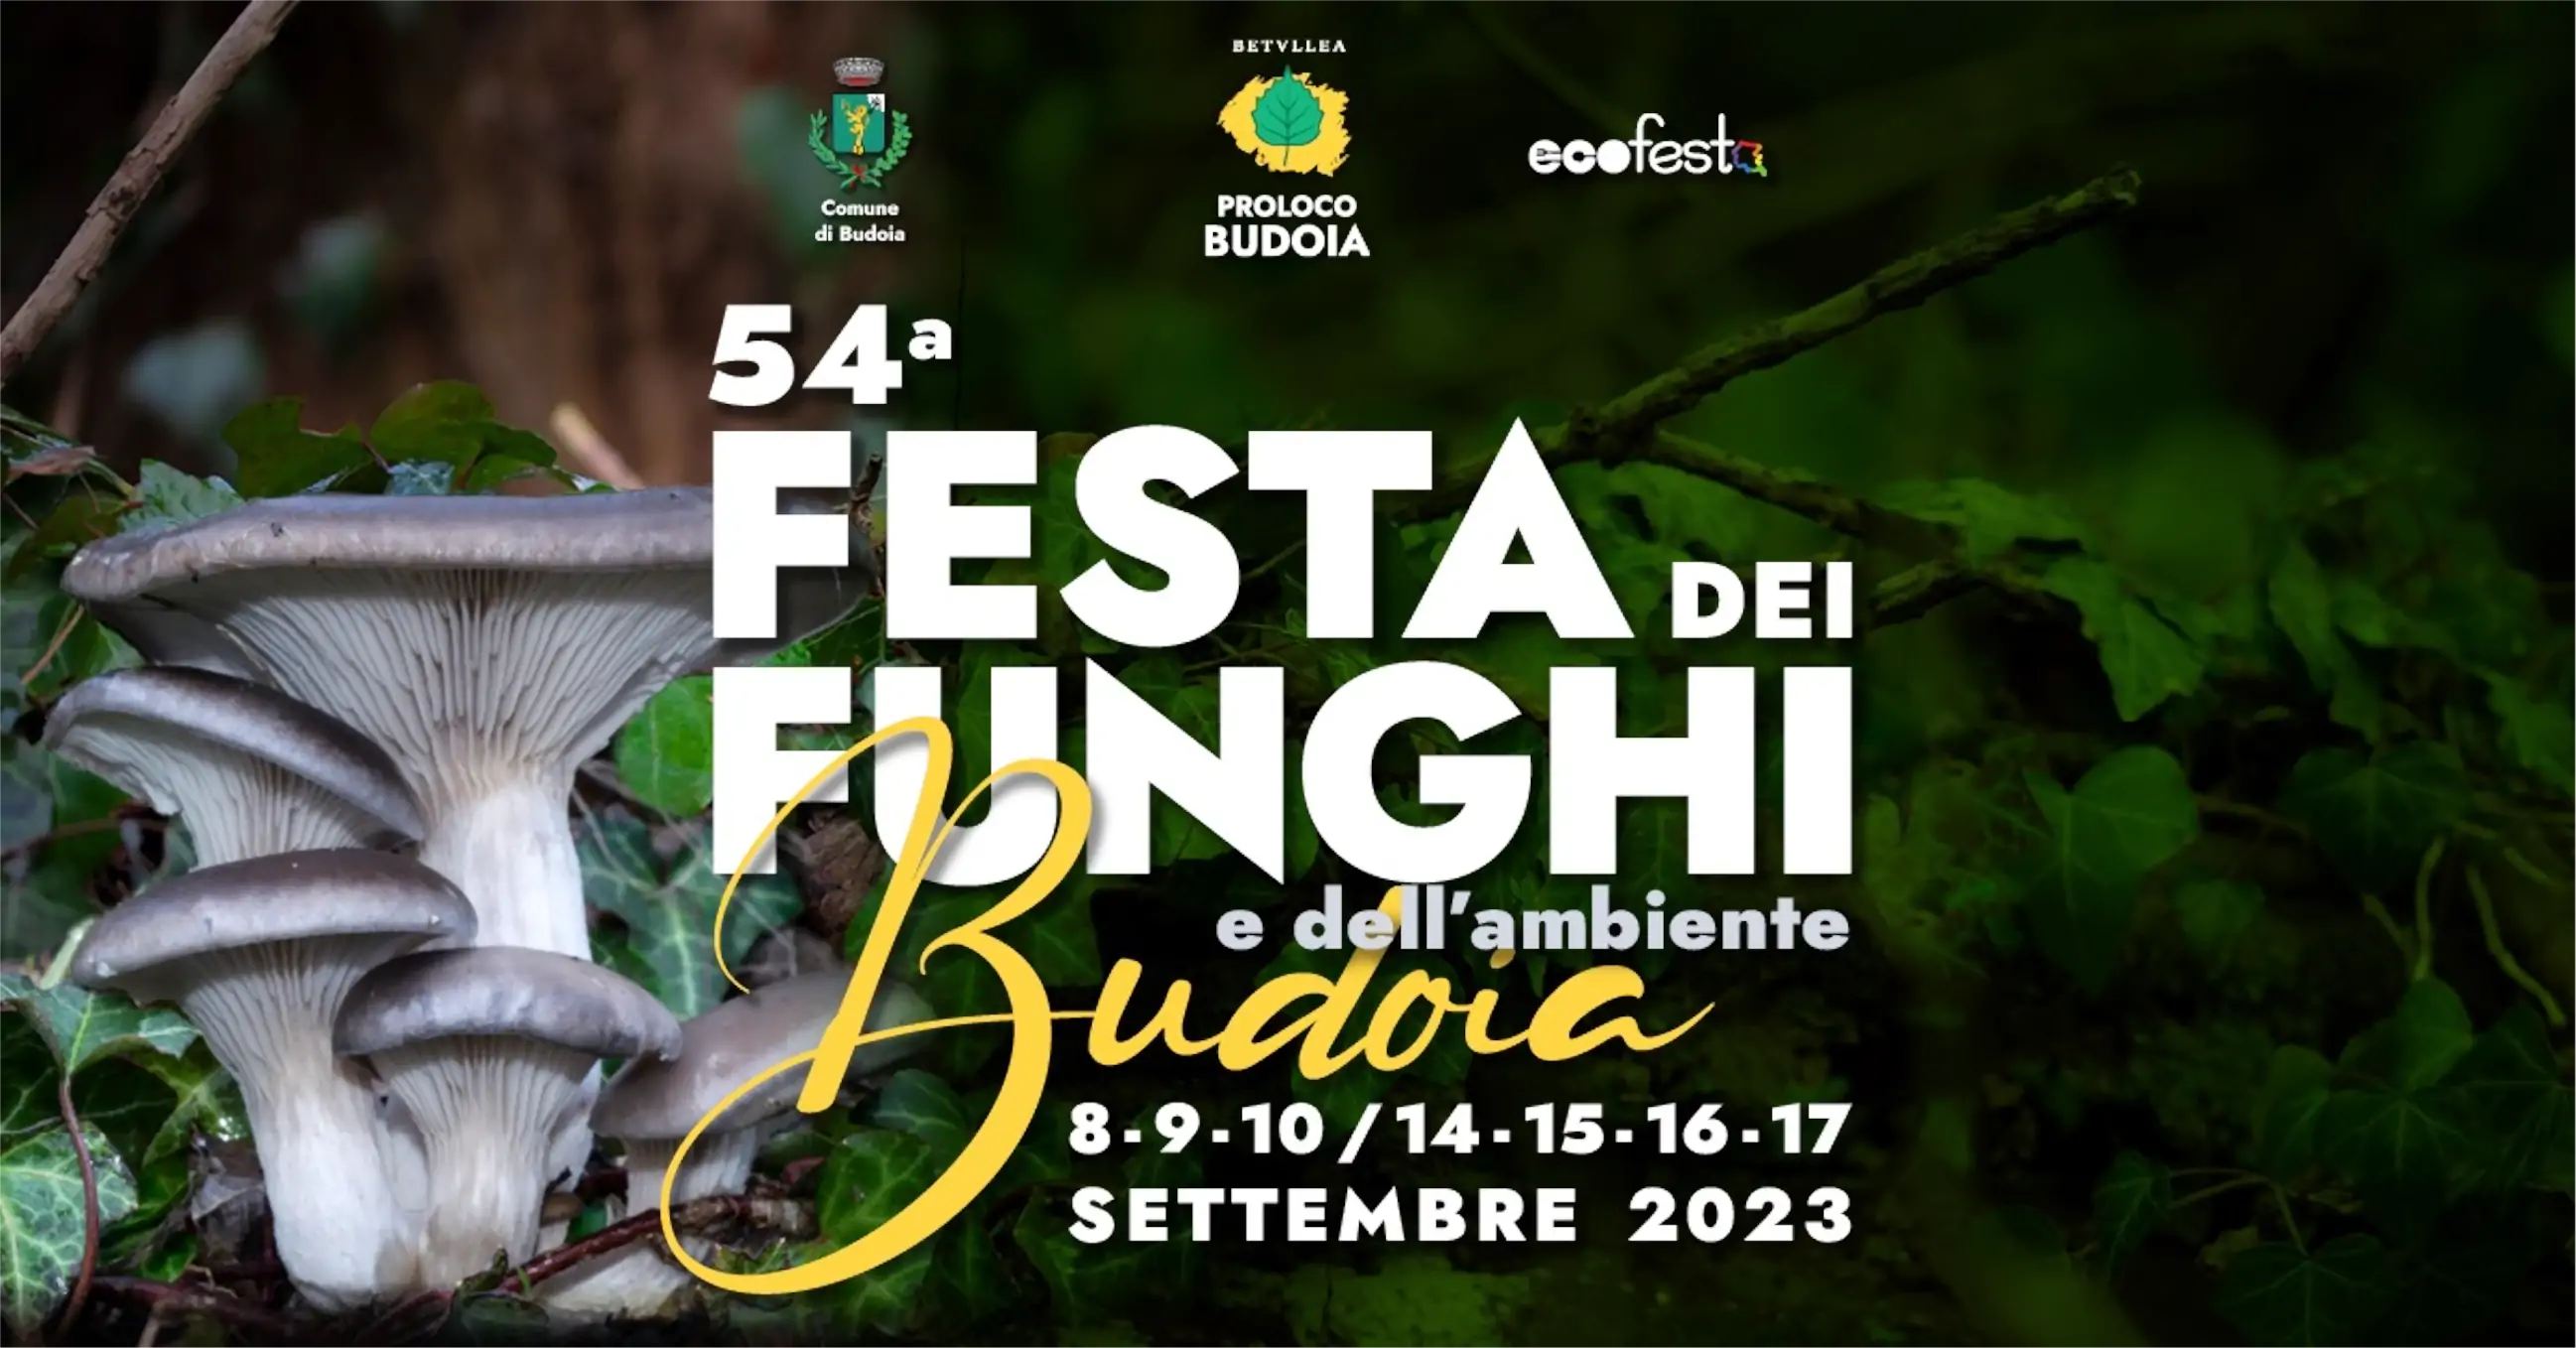 54ª Festa dei Funghi e dell'ambiente Budoia